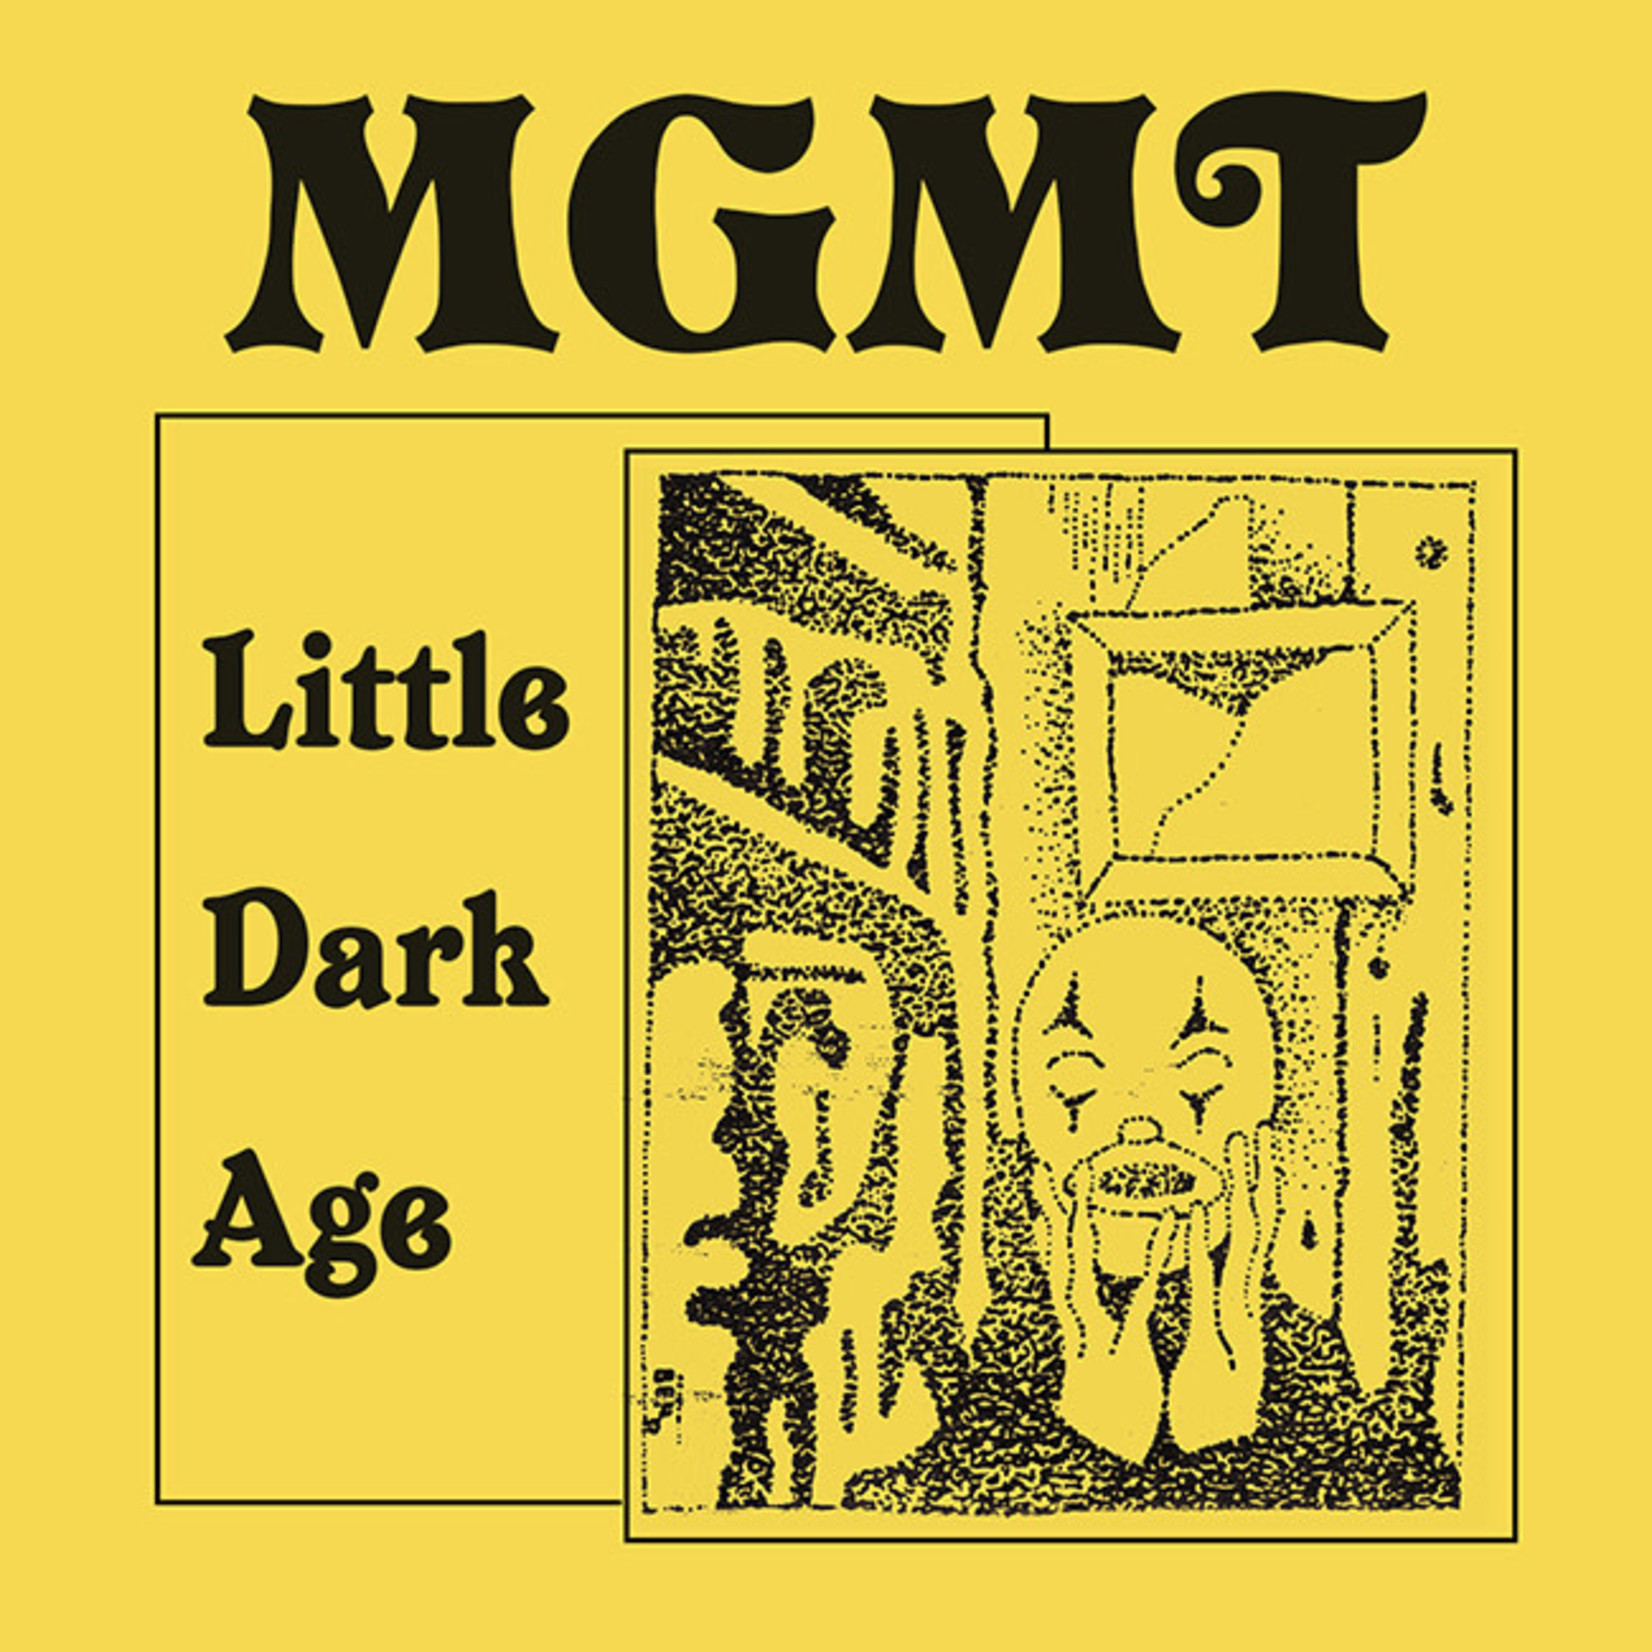 [New] MGMT - Little Dark Age (2LP)